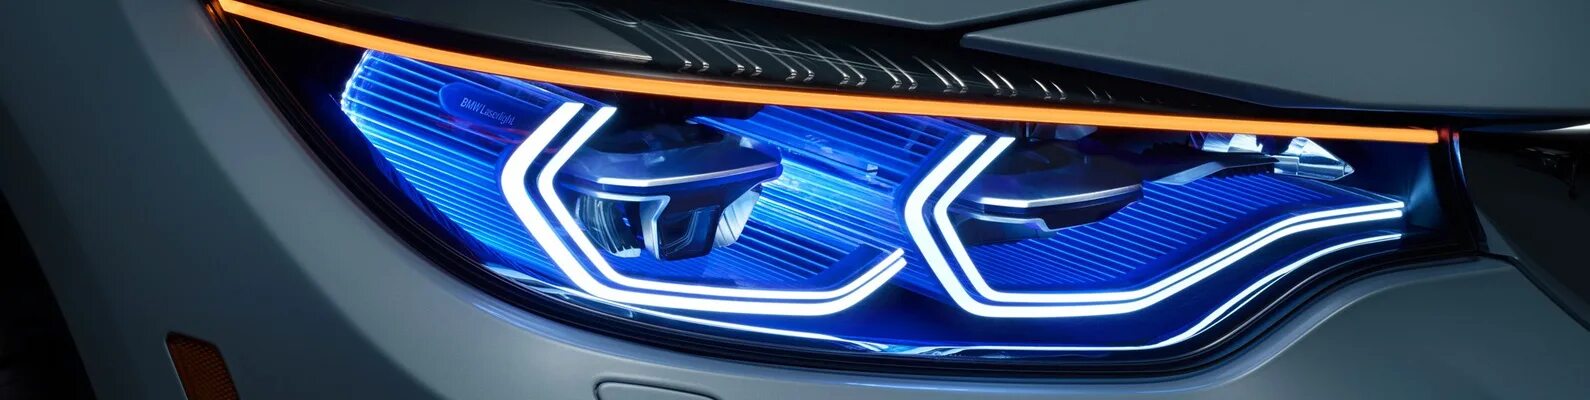 Лазерные фары bmw. Лазерные фары BMW дальность. BMW 330i Shadow line лазерные фары. Лазерный свет для авто. Лазерные фары дальнего света.